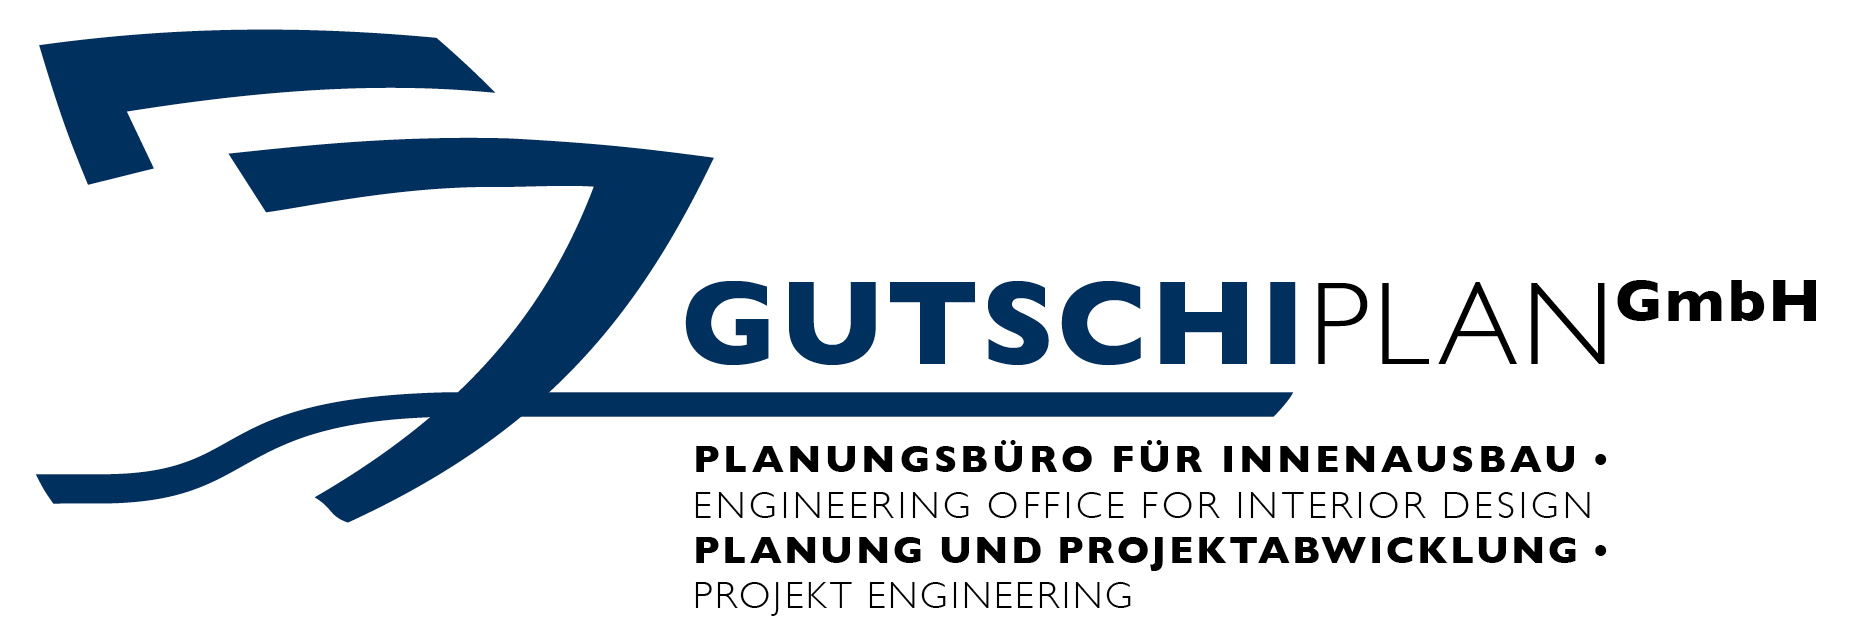 Gutschiplan GmbH - Planungsbüro für Innenausbau